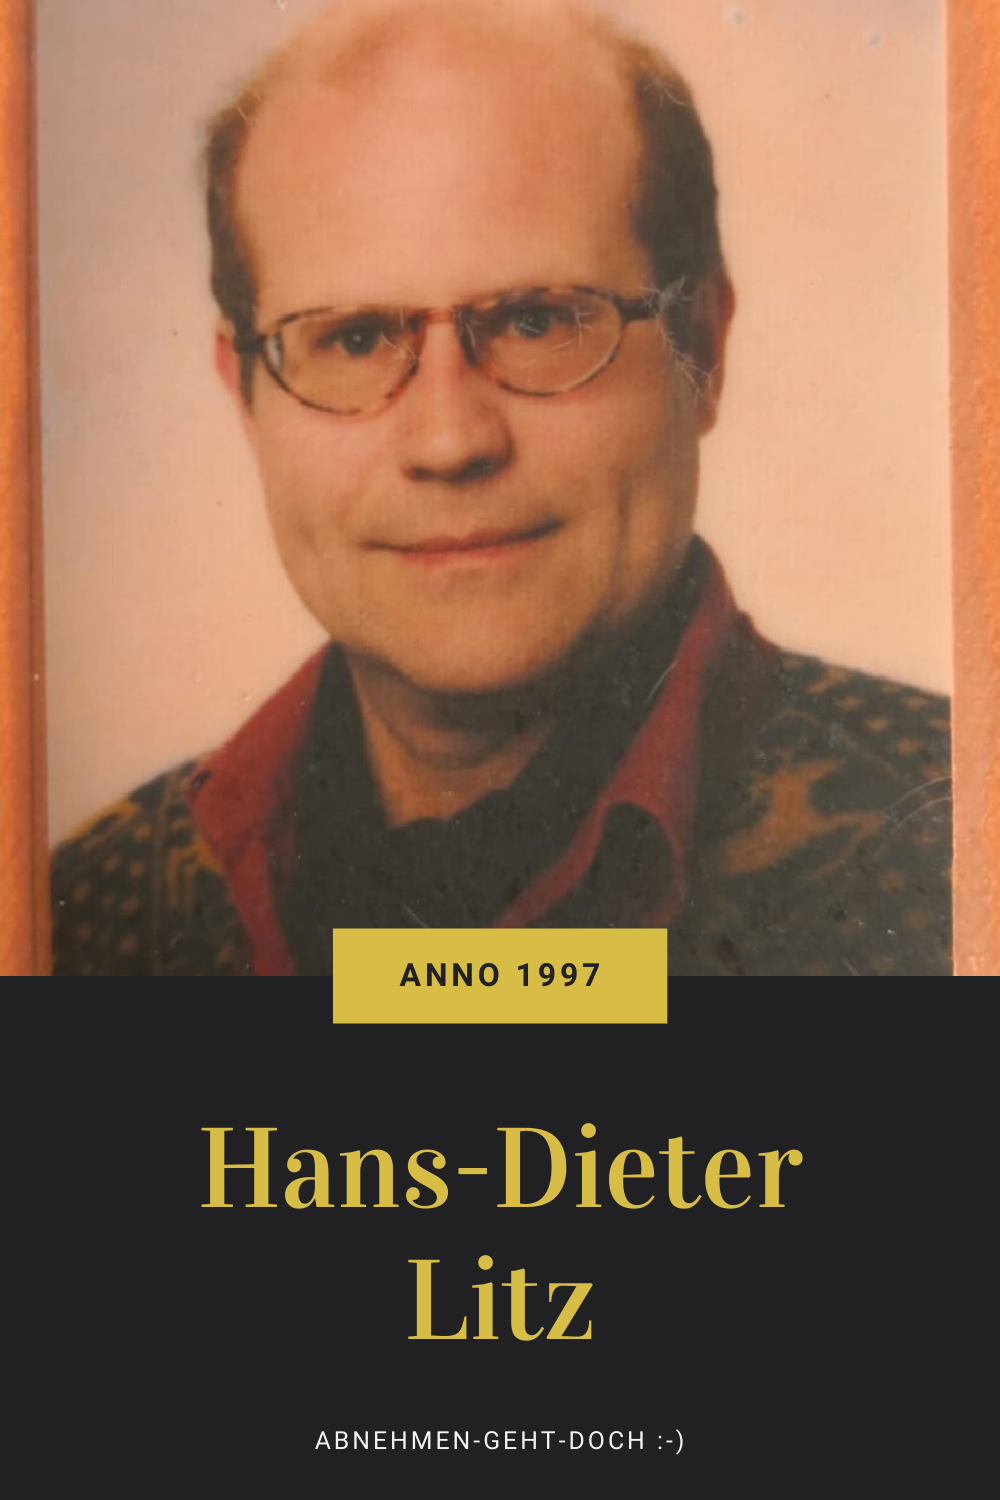 Hans Dieter Litz 1997 Pinterest 1 Über